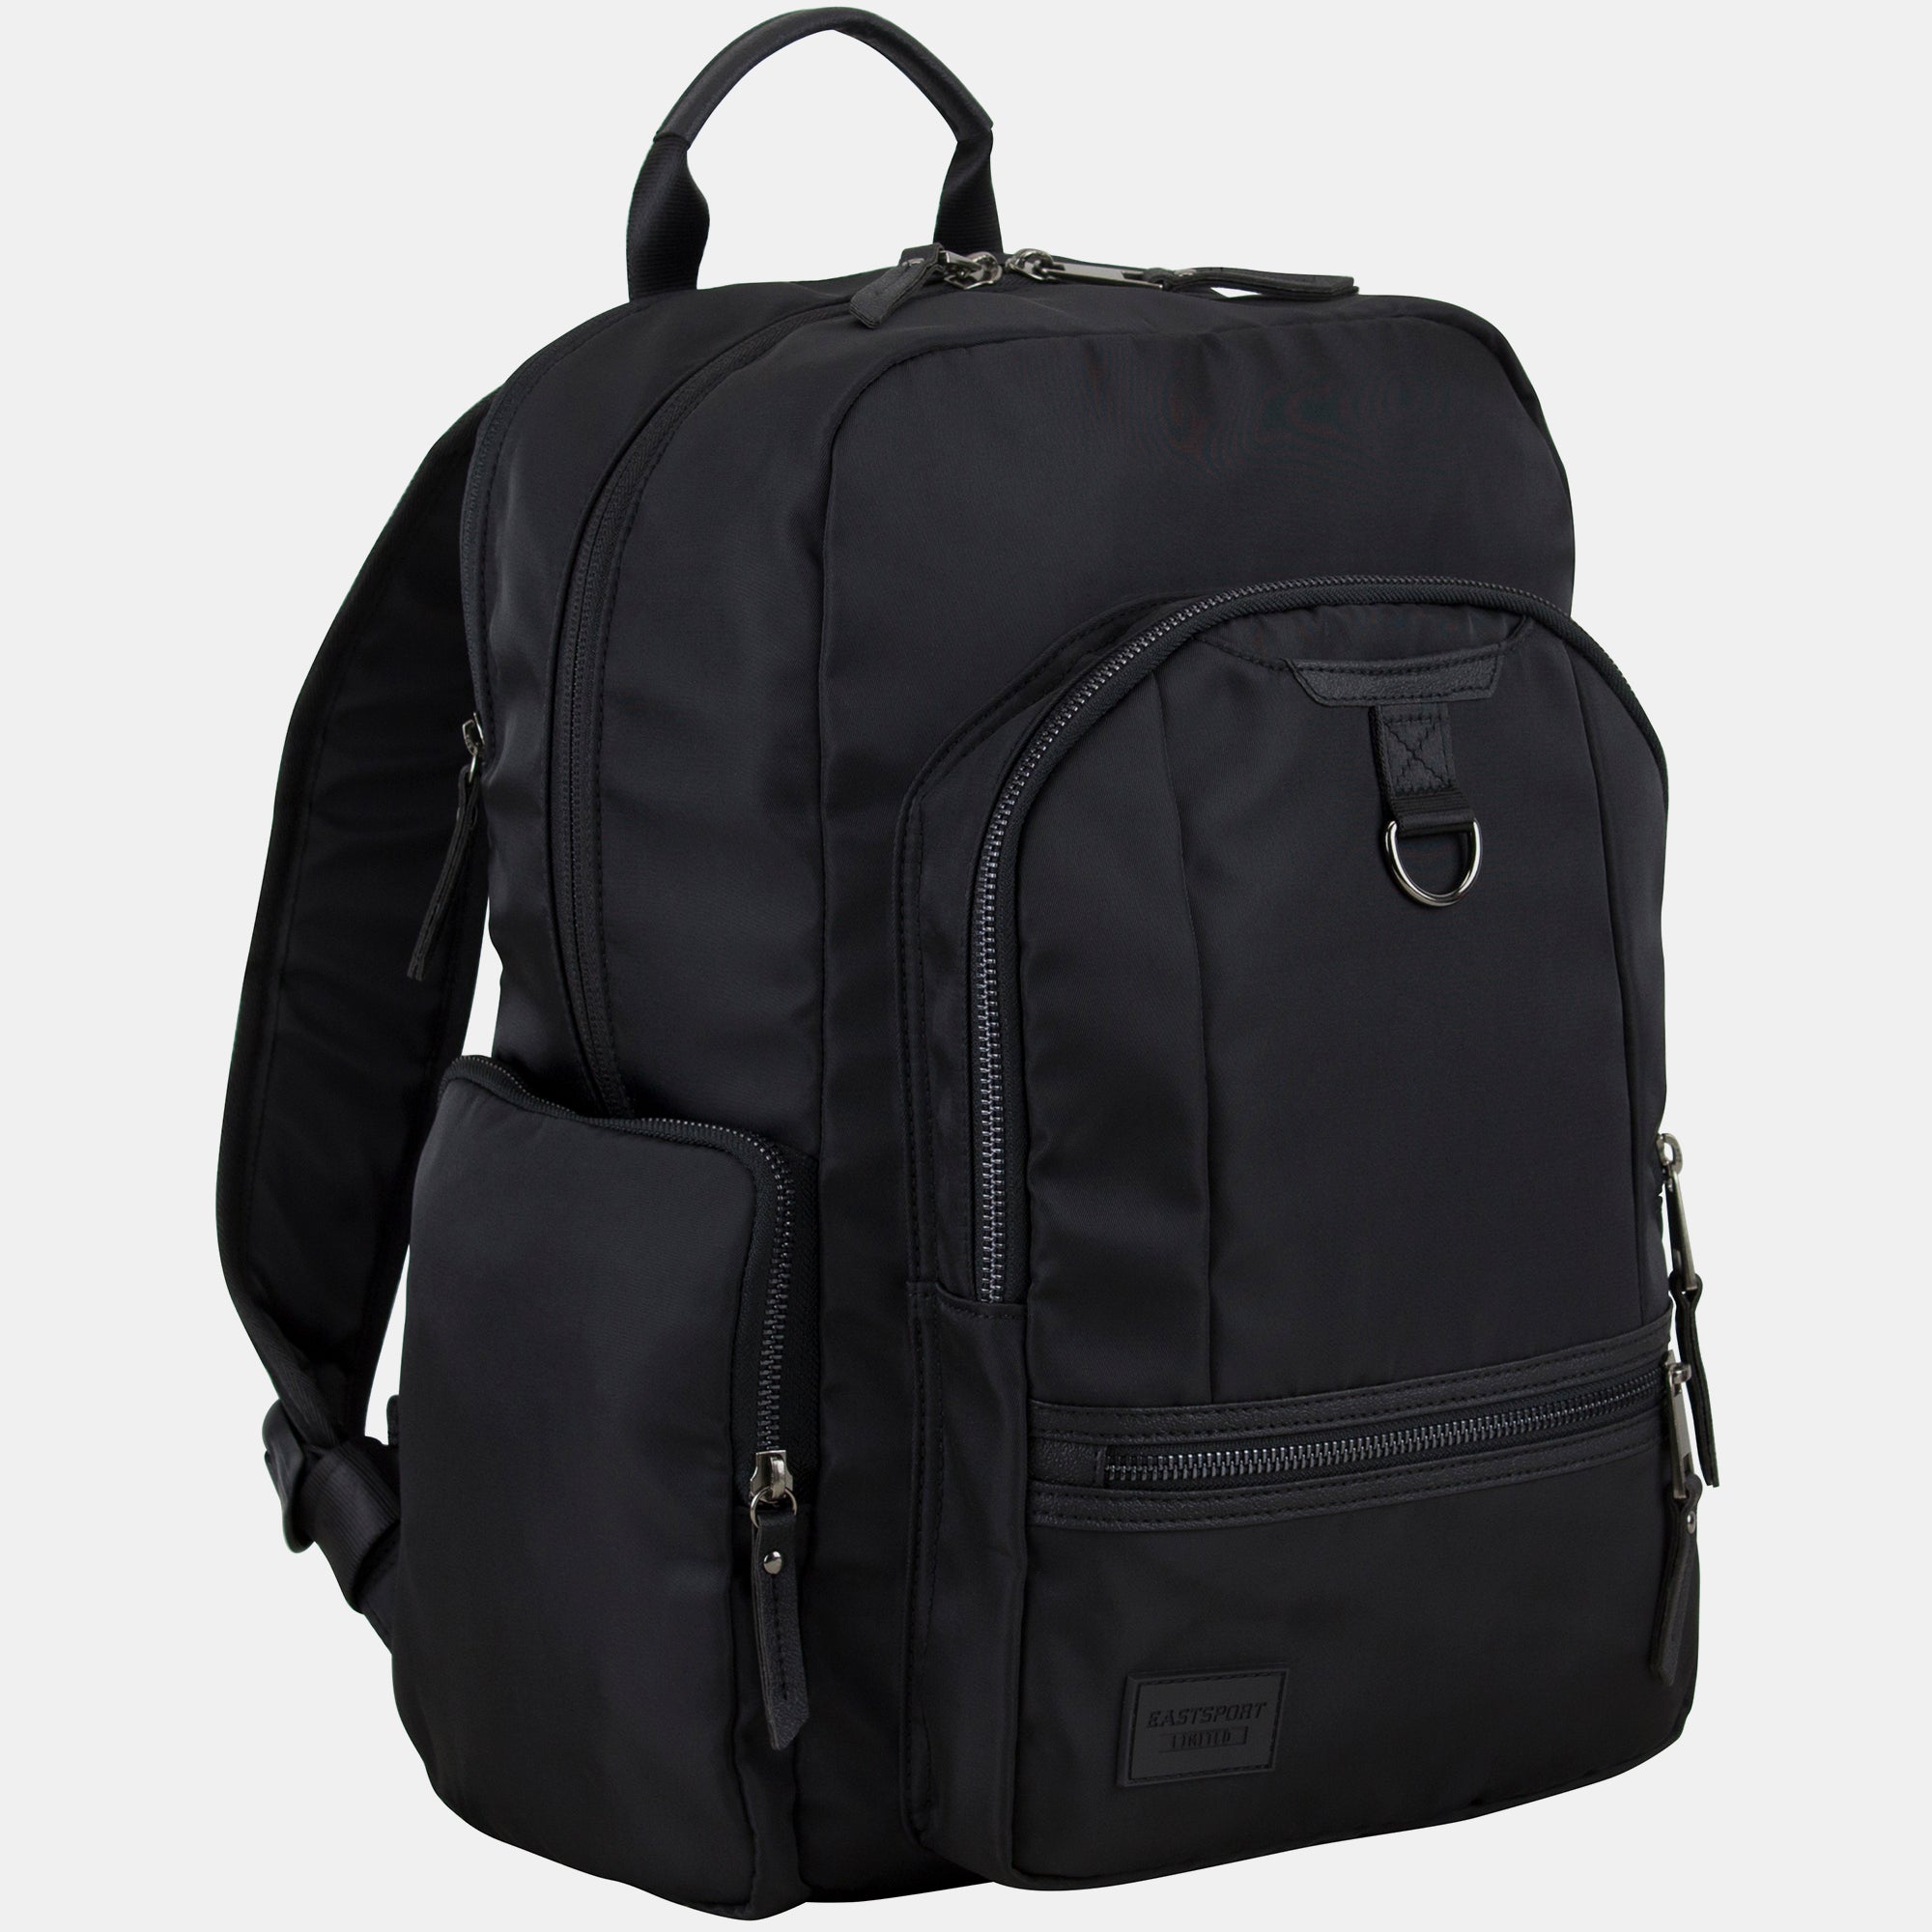 Lauren 2.0 Backpack